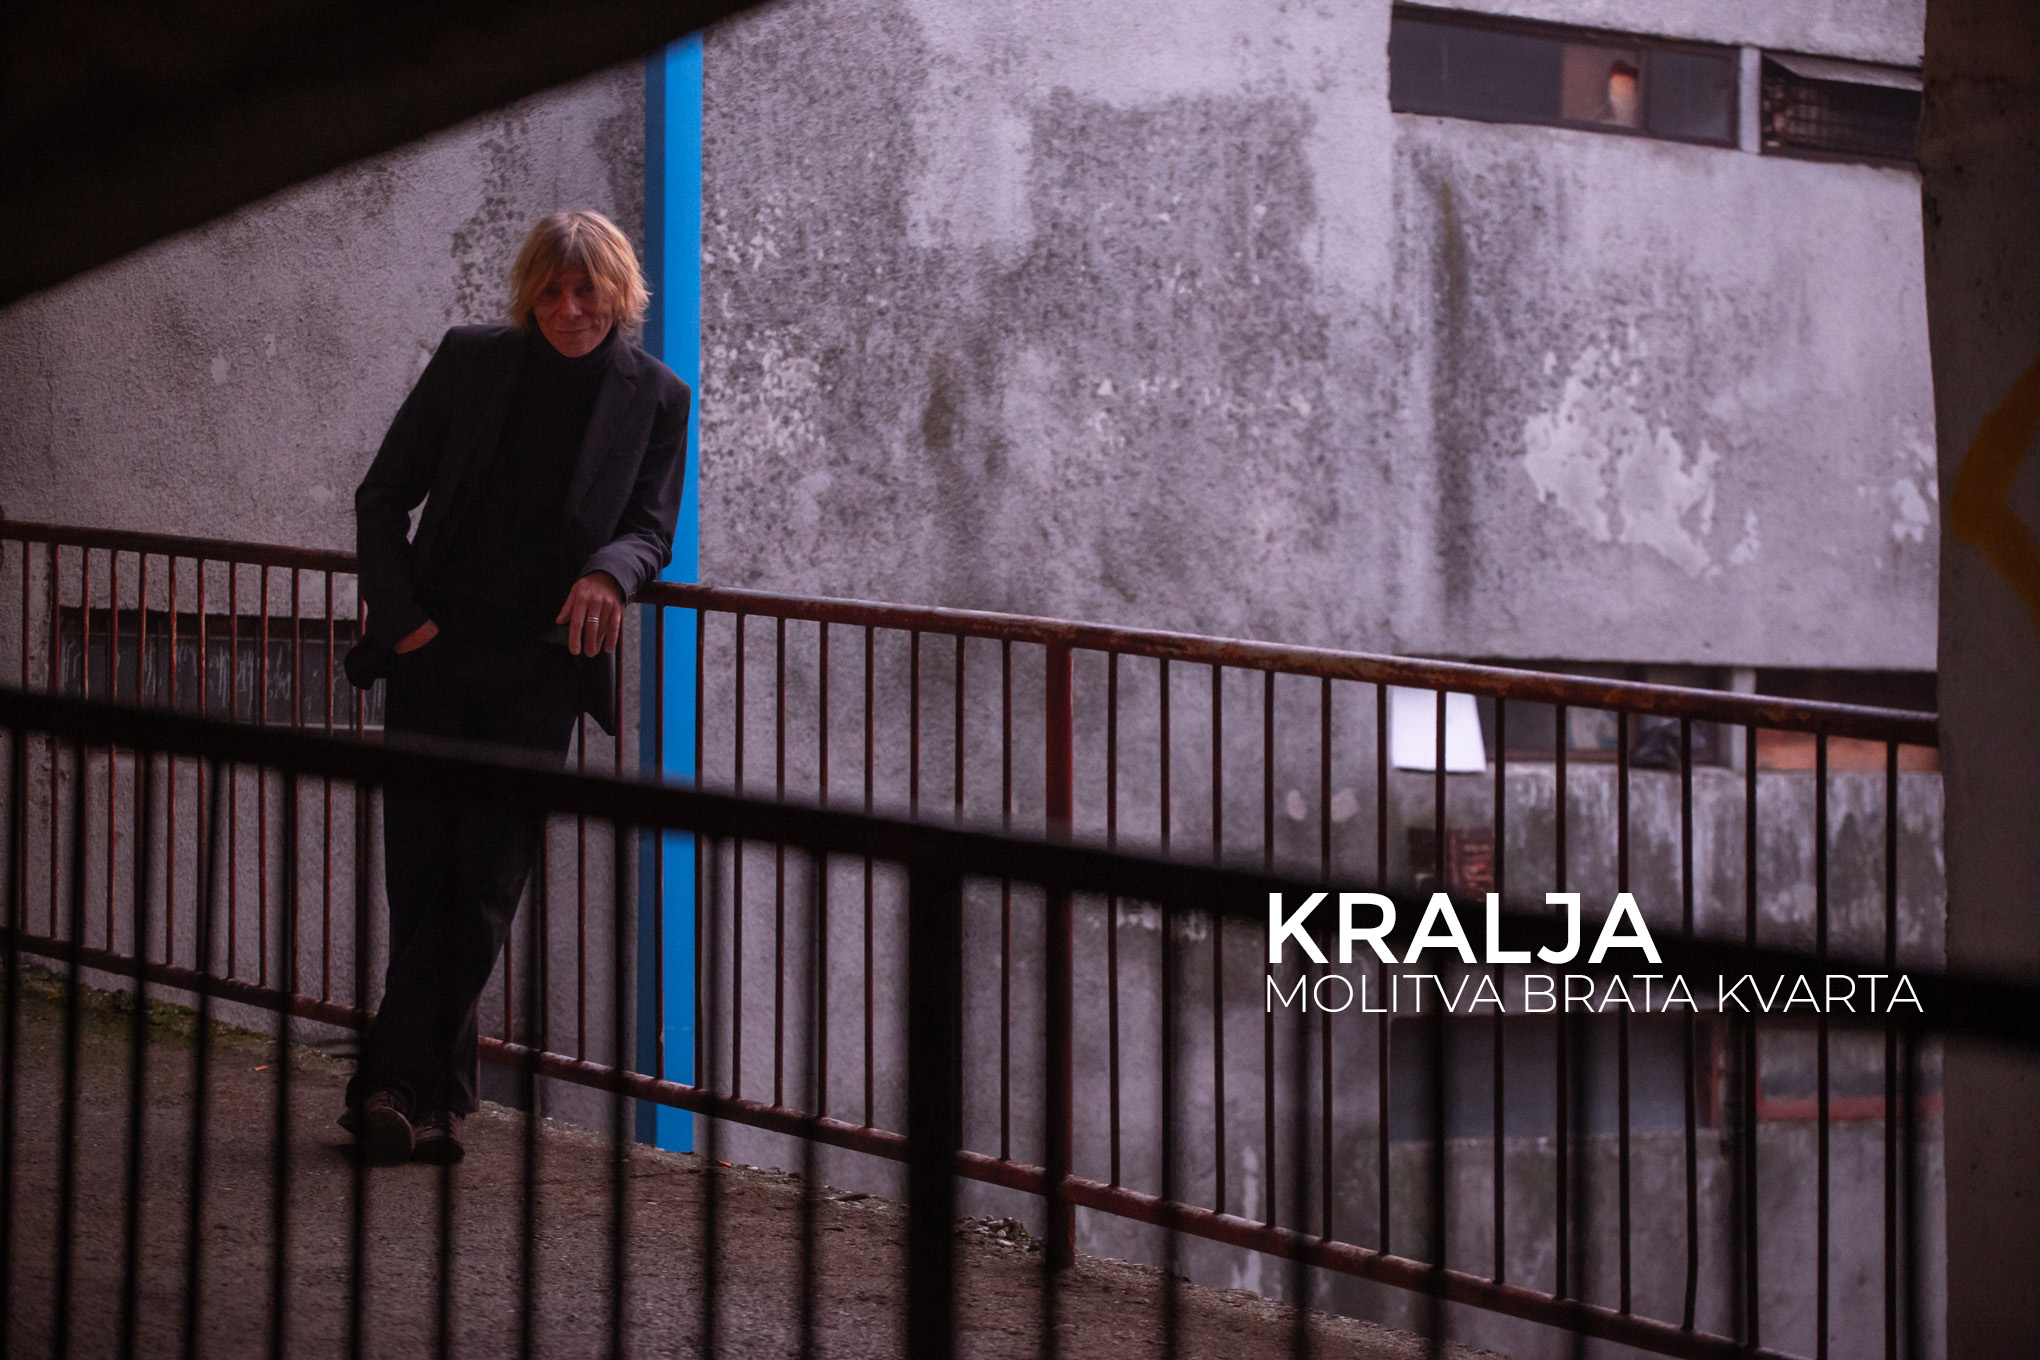 Read more about the article Legendarni gitarist Kralja predstavlja predivan božićni singl “Molitva brata kvarta” i prateći video spot